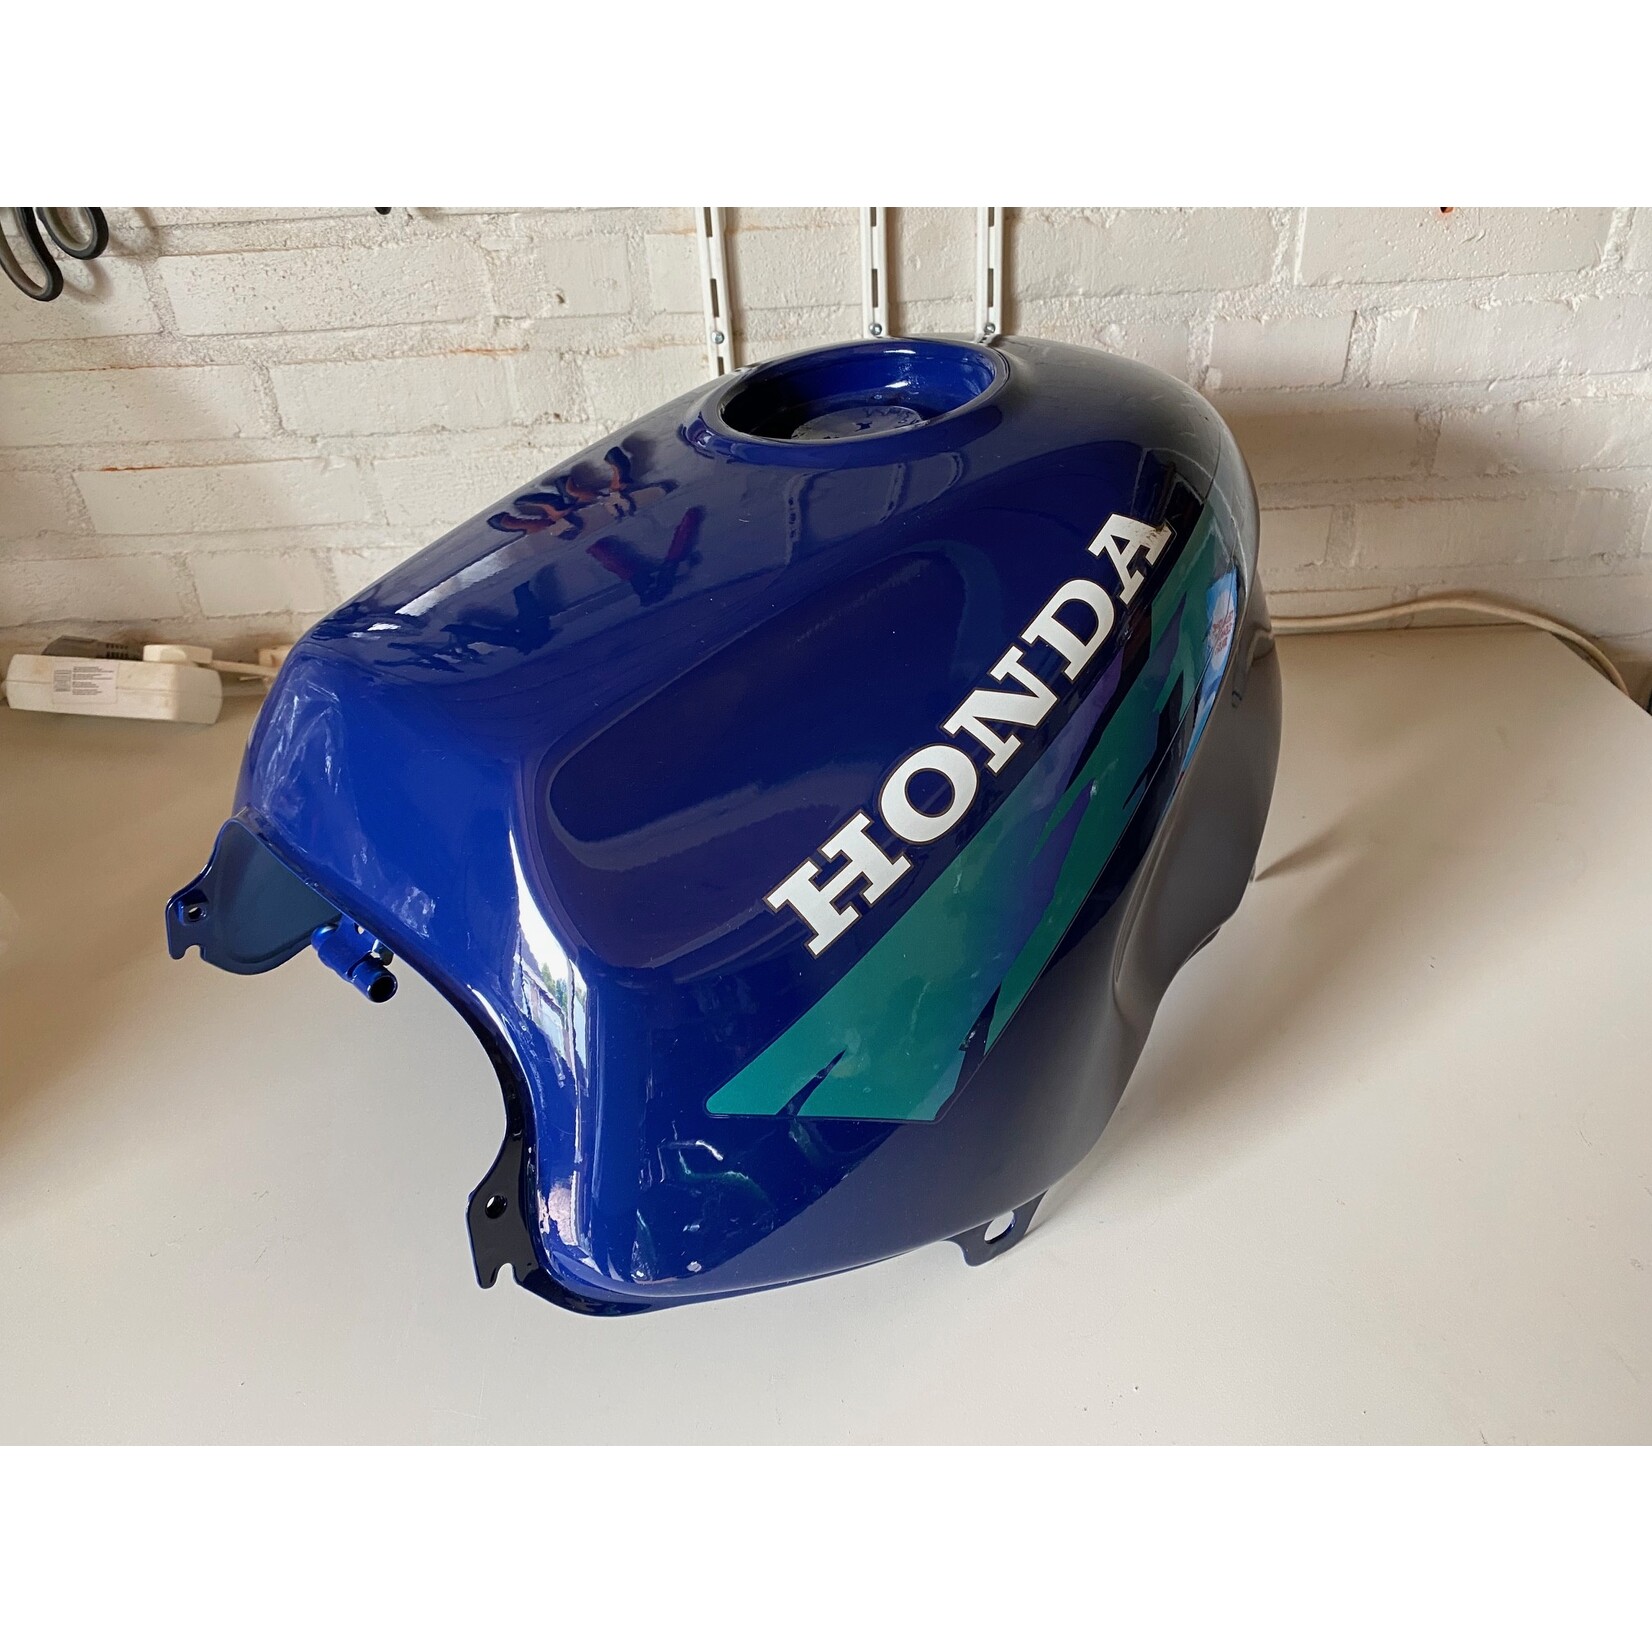 HONDA Honda CB500 Fueltank New